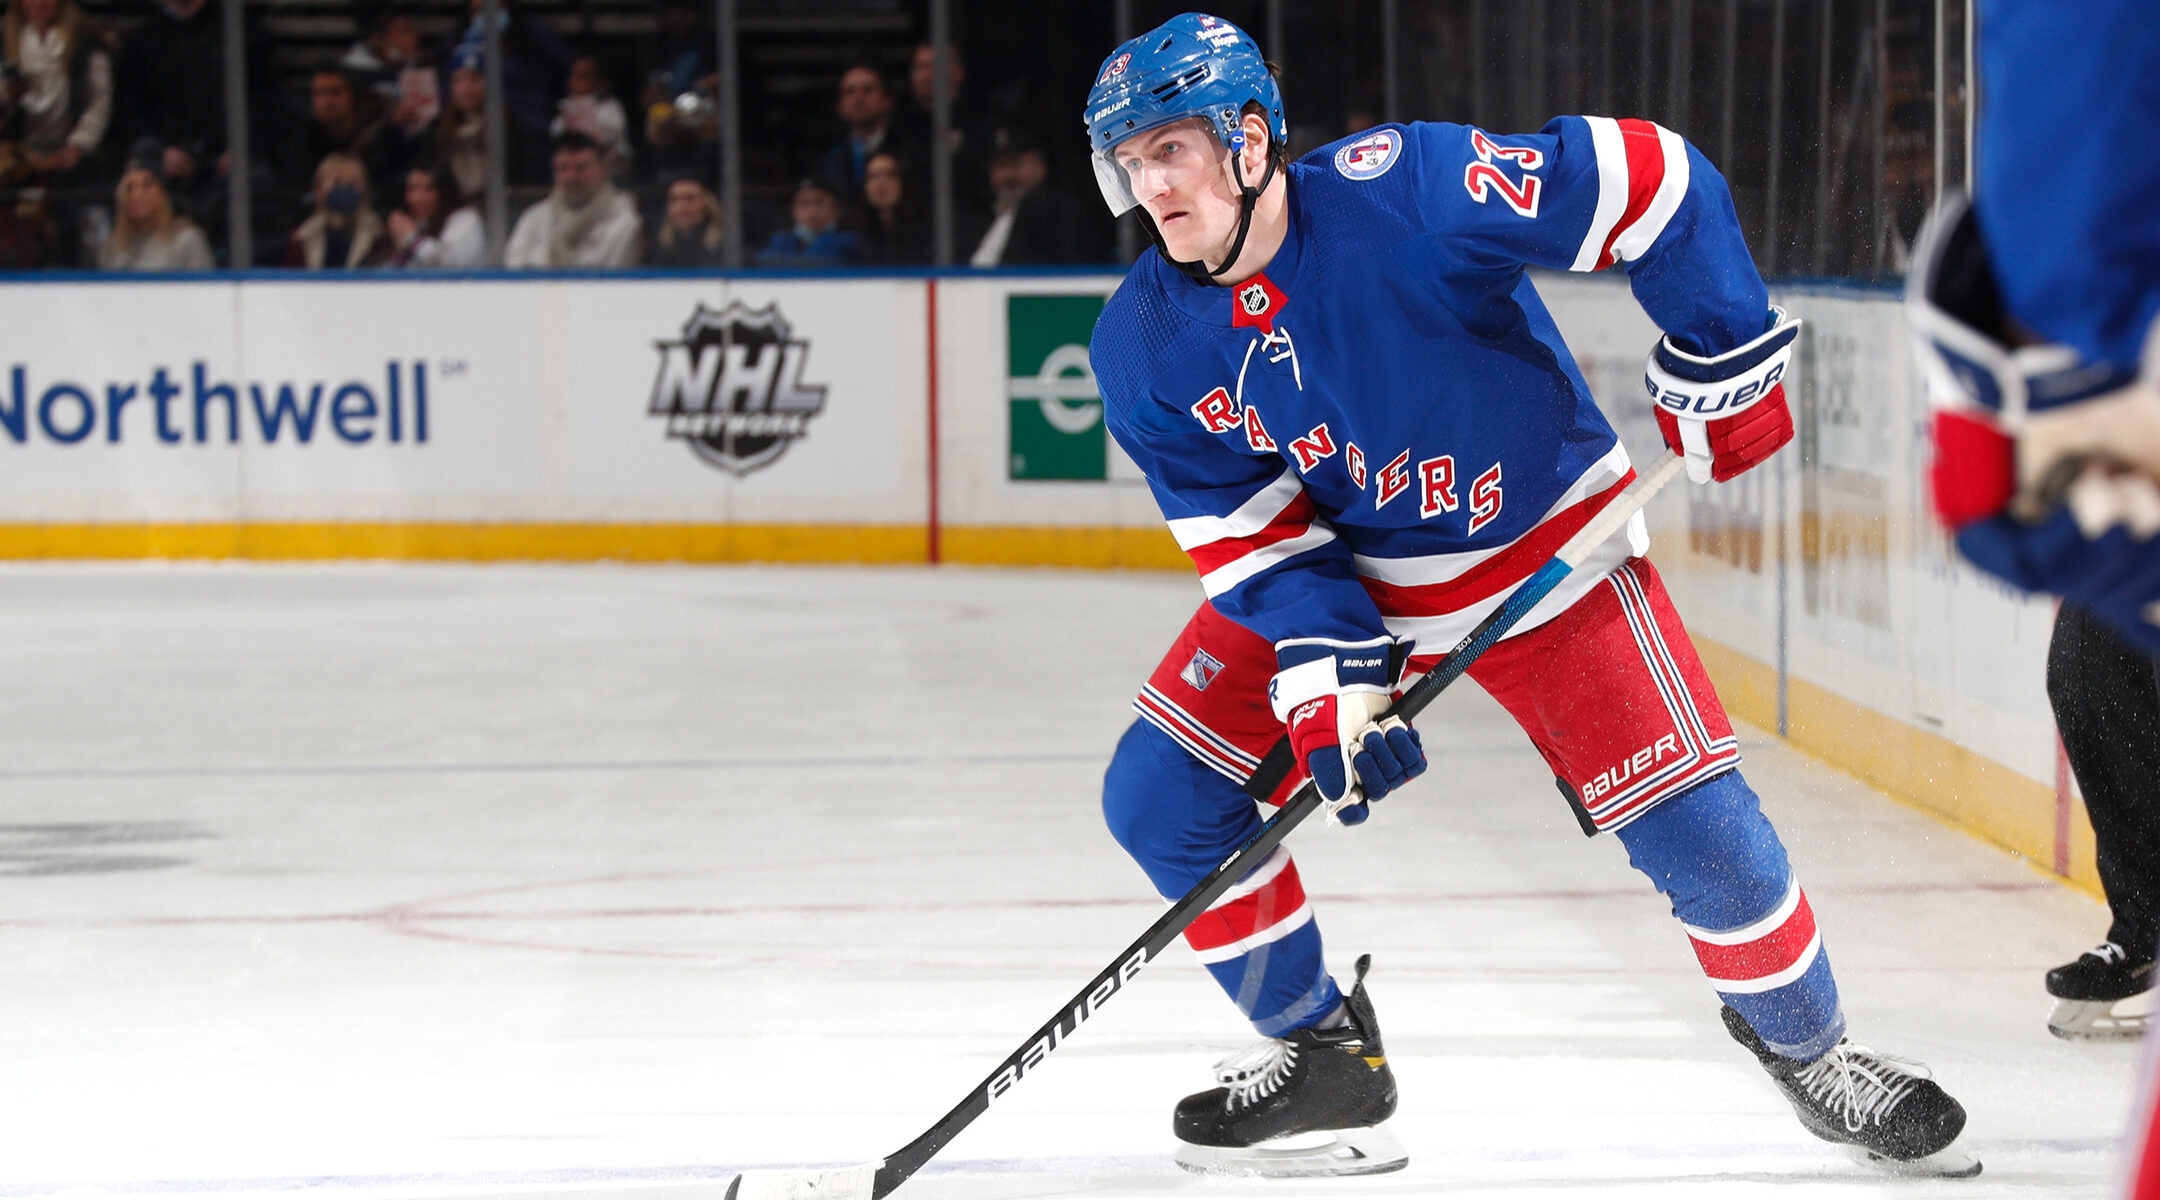 NY Rangers' Adam Fox named hockey's top defenseman